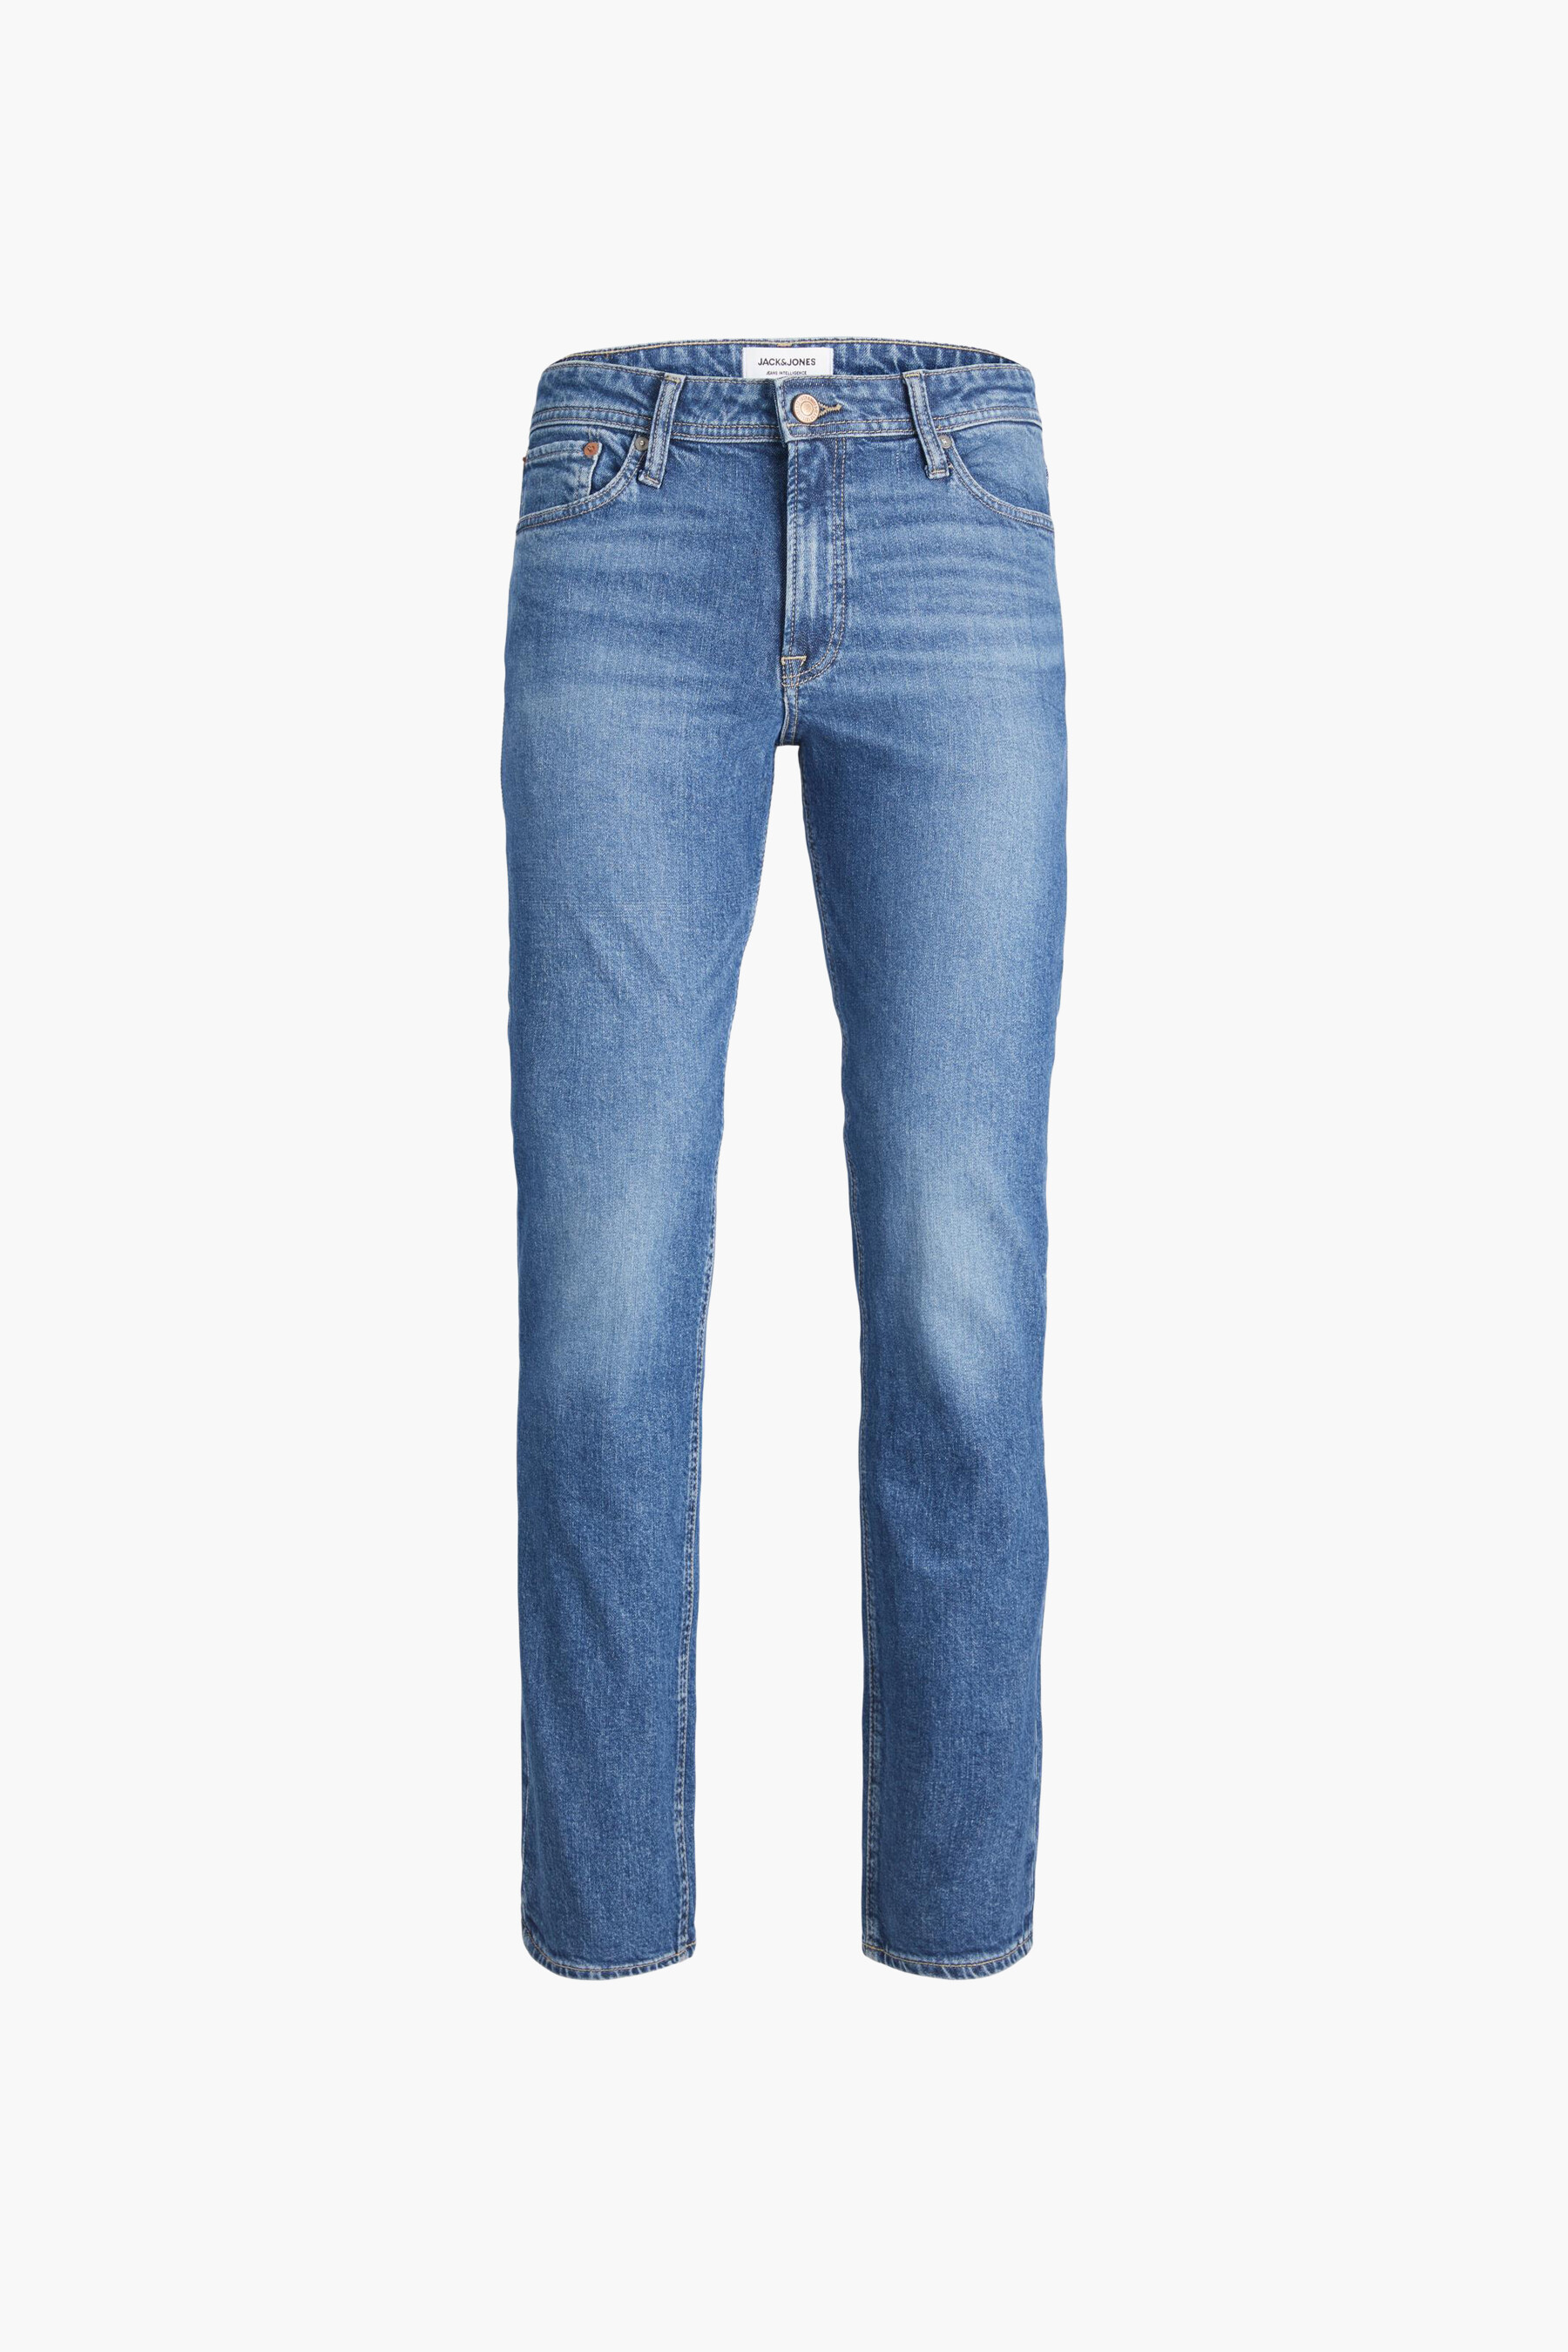 GANT Denim Maxen Extra Slim Fit Retro Shield Jeans in het Blauw voor heren Heren Kleding voor voor Jeans voor Jeans met rechte pijp 